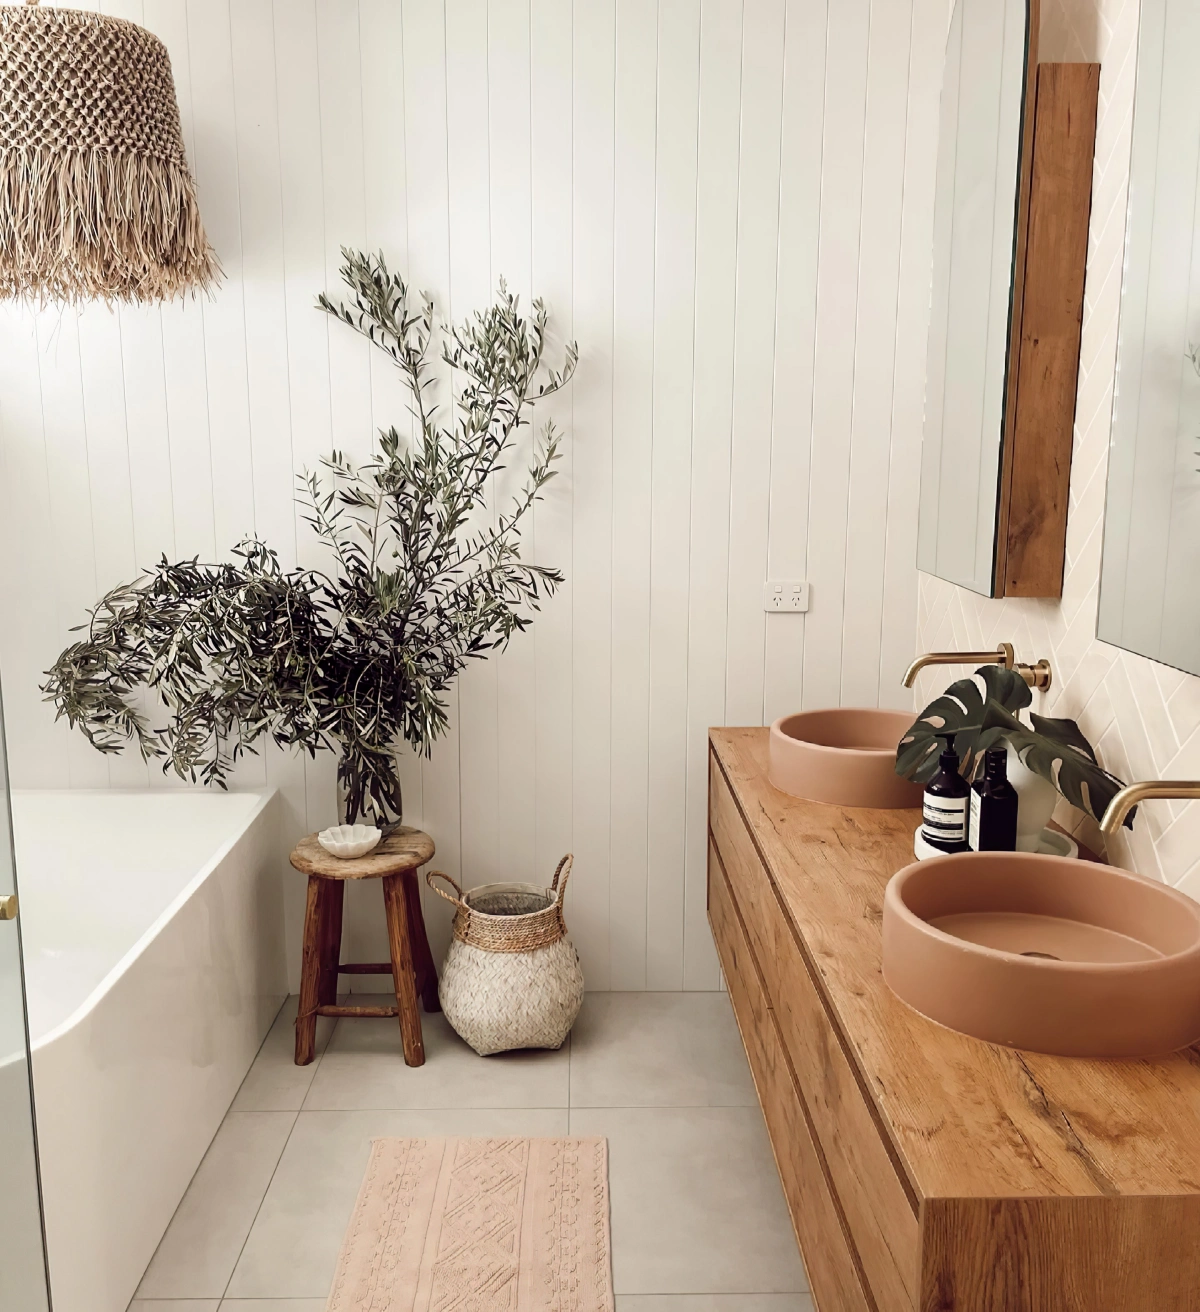 dalles aspect beton carrelage blanc mur relief baignoire blanc lavabo meuble bois